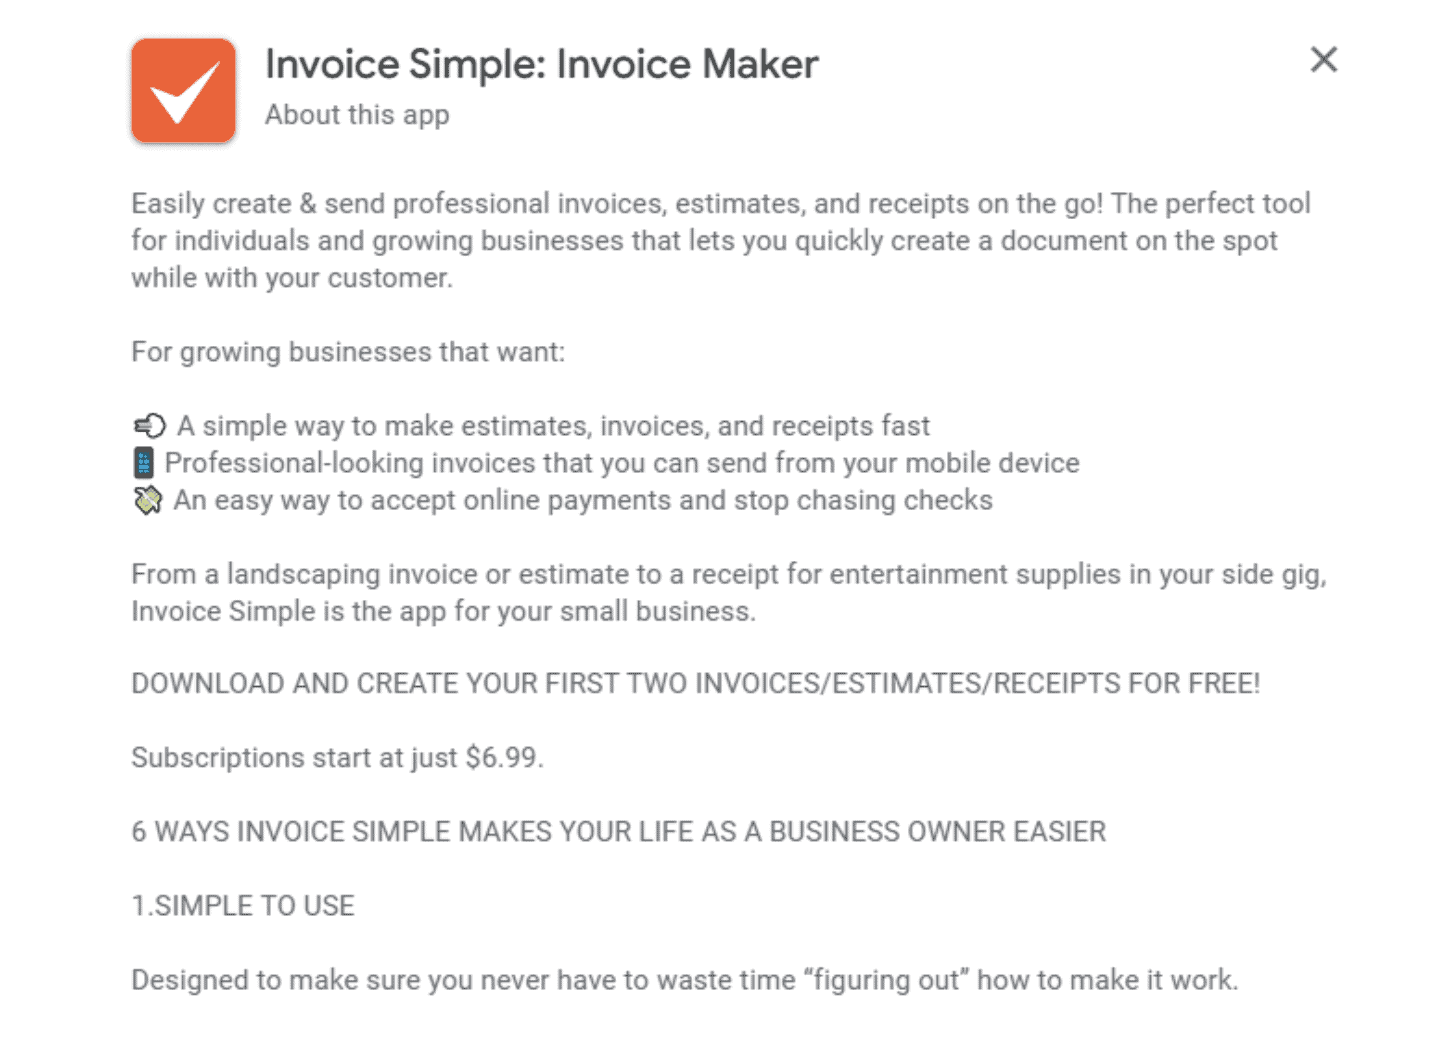 Invoice Simple Long Description